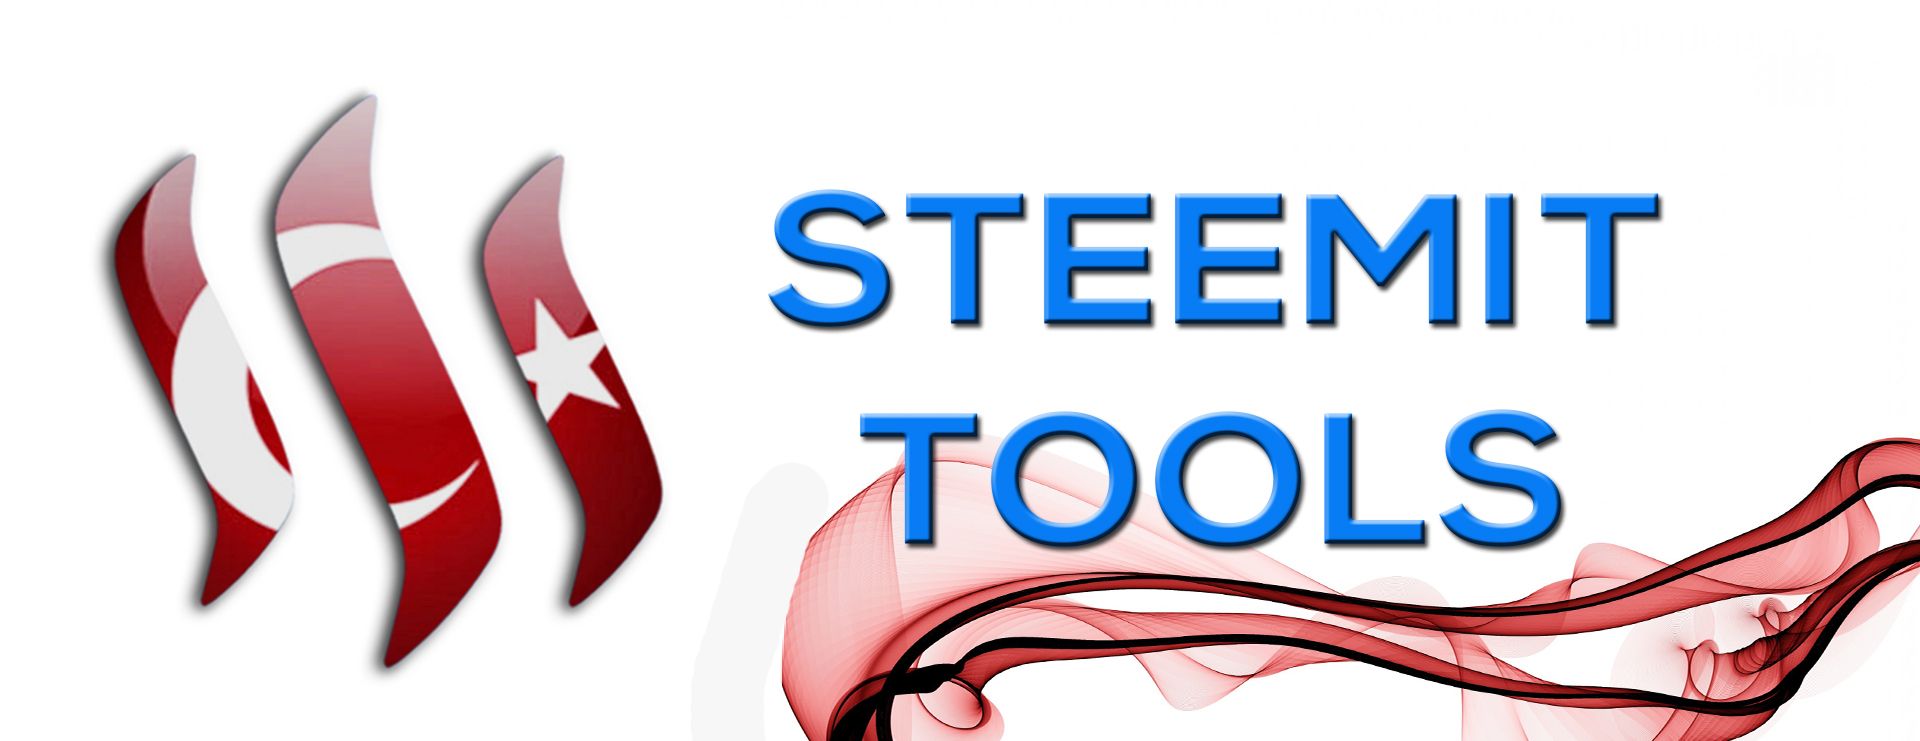 steemit-tools.jpg